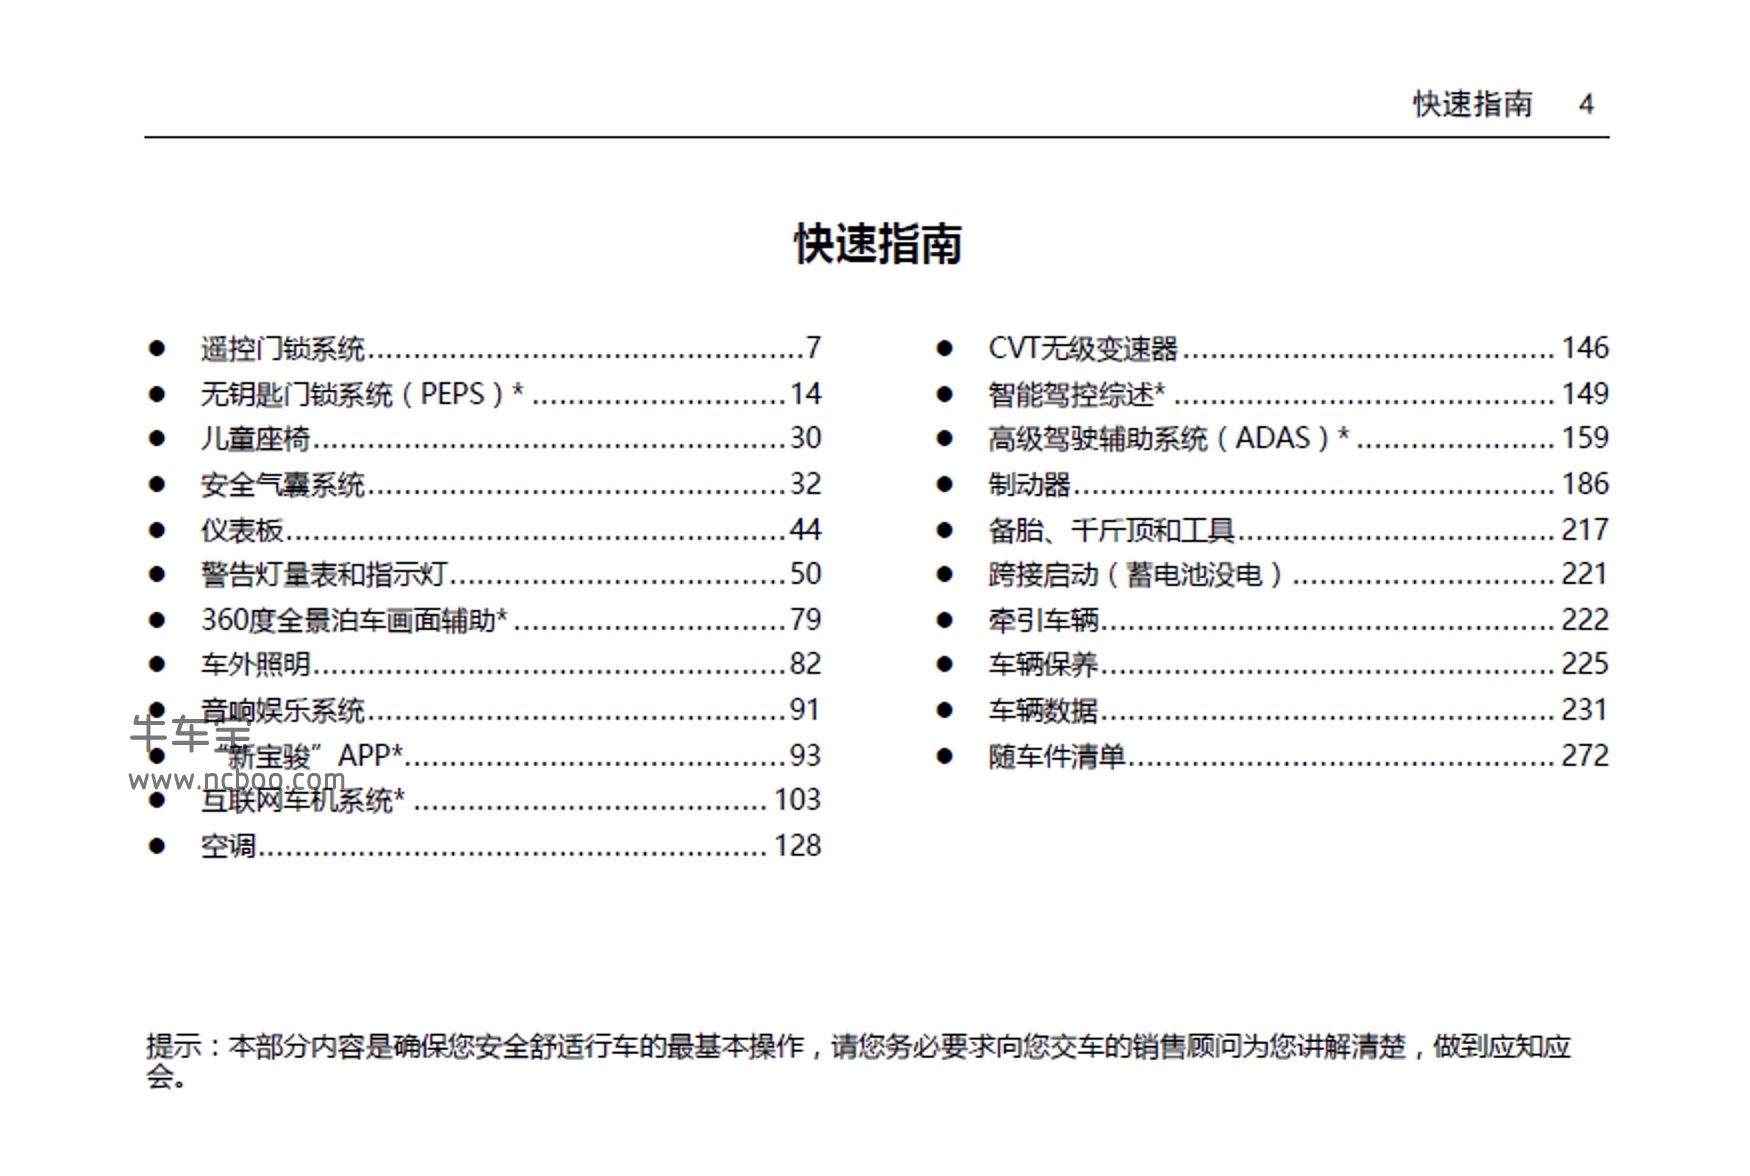 2021年新宝骏RC-5W产品使用说明书PDF电子版下载